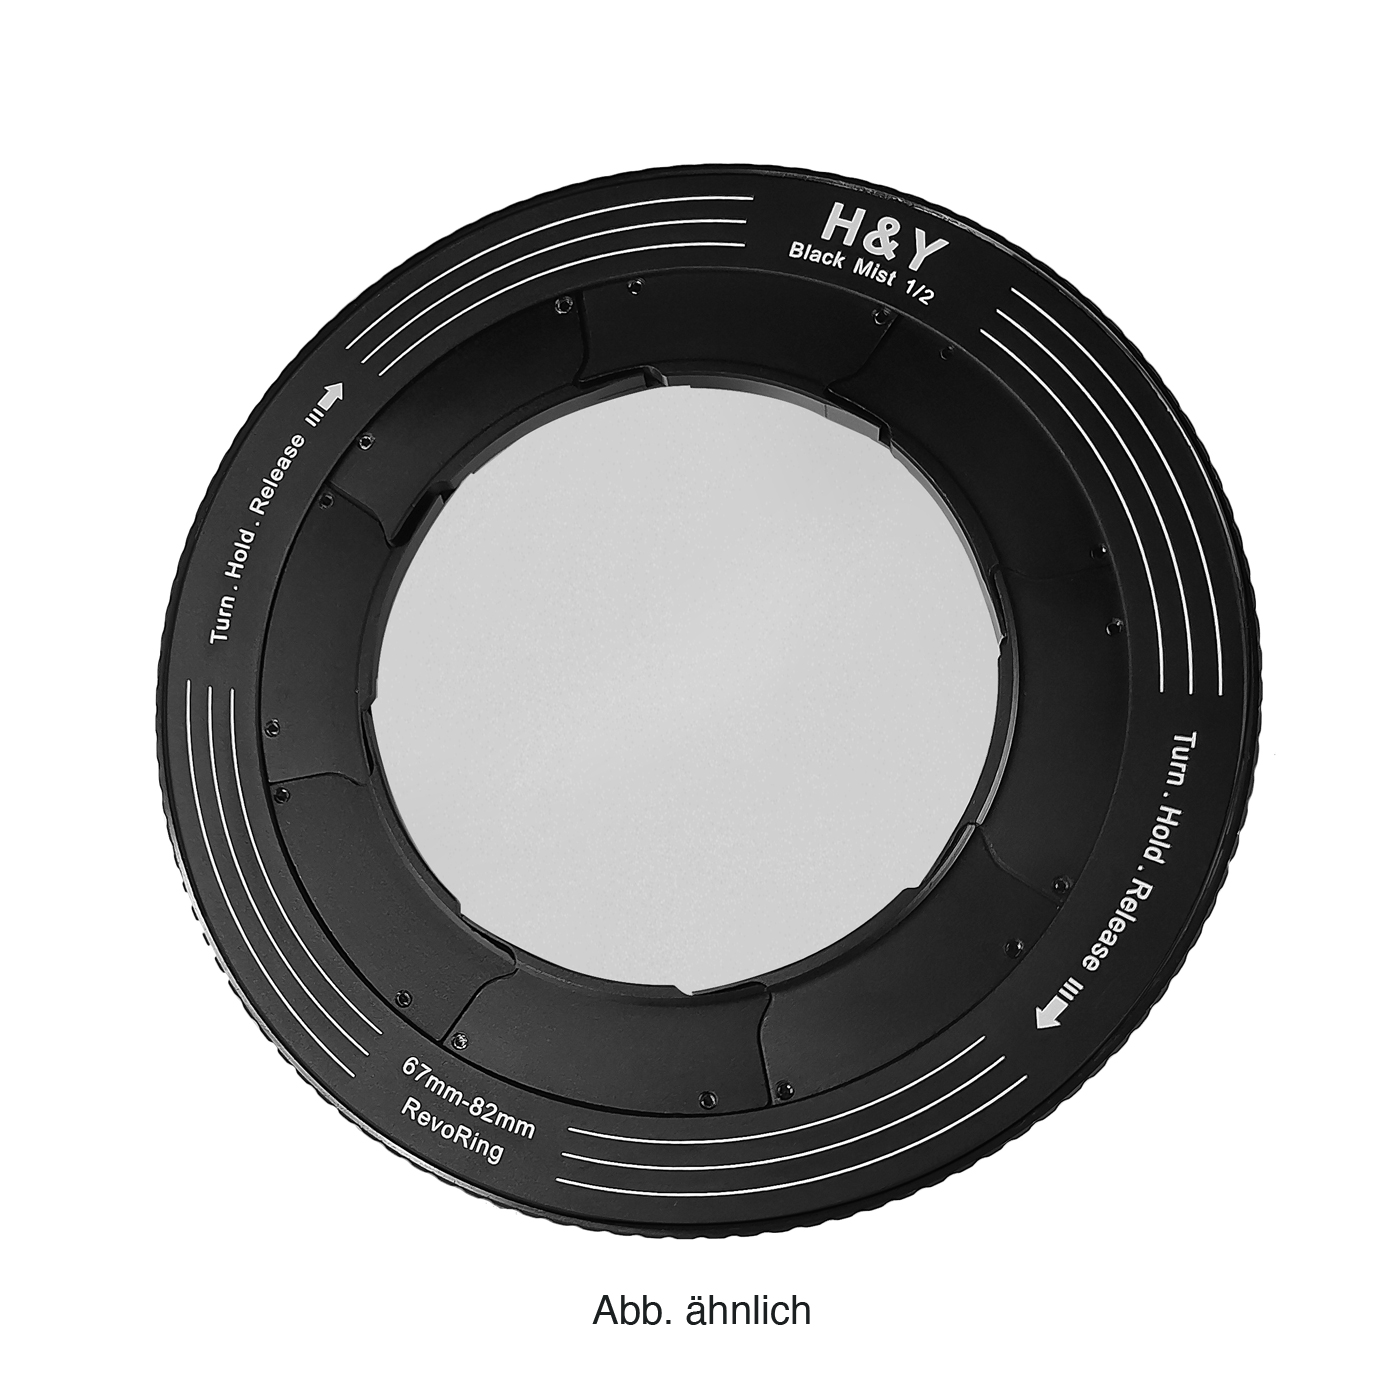 H&Y REVORING 46-62mm Black Mist 1/2 Filter